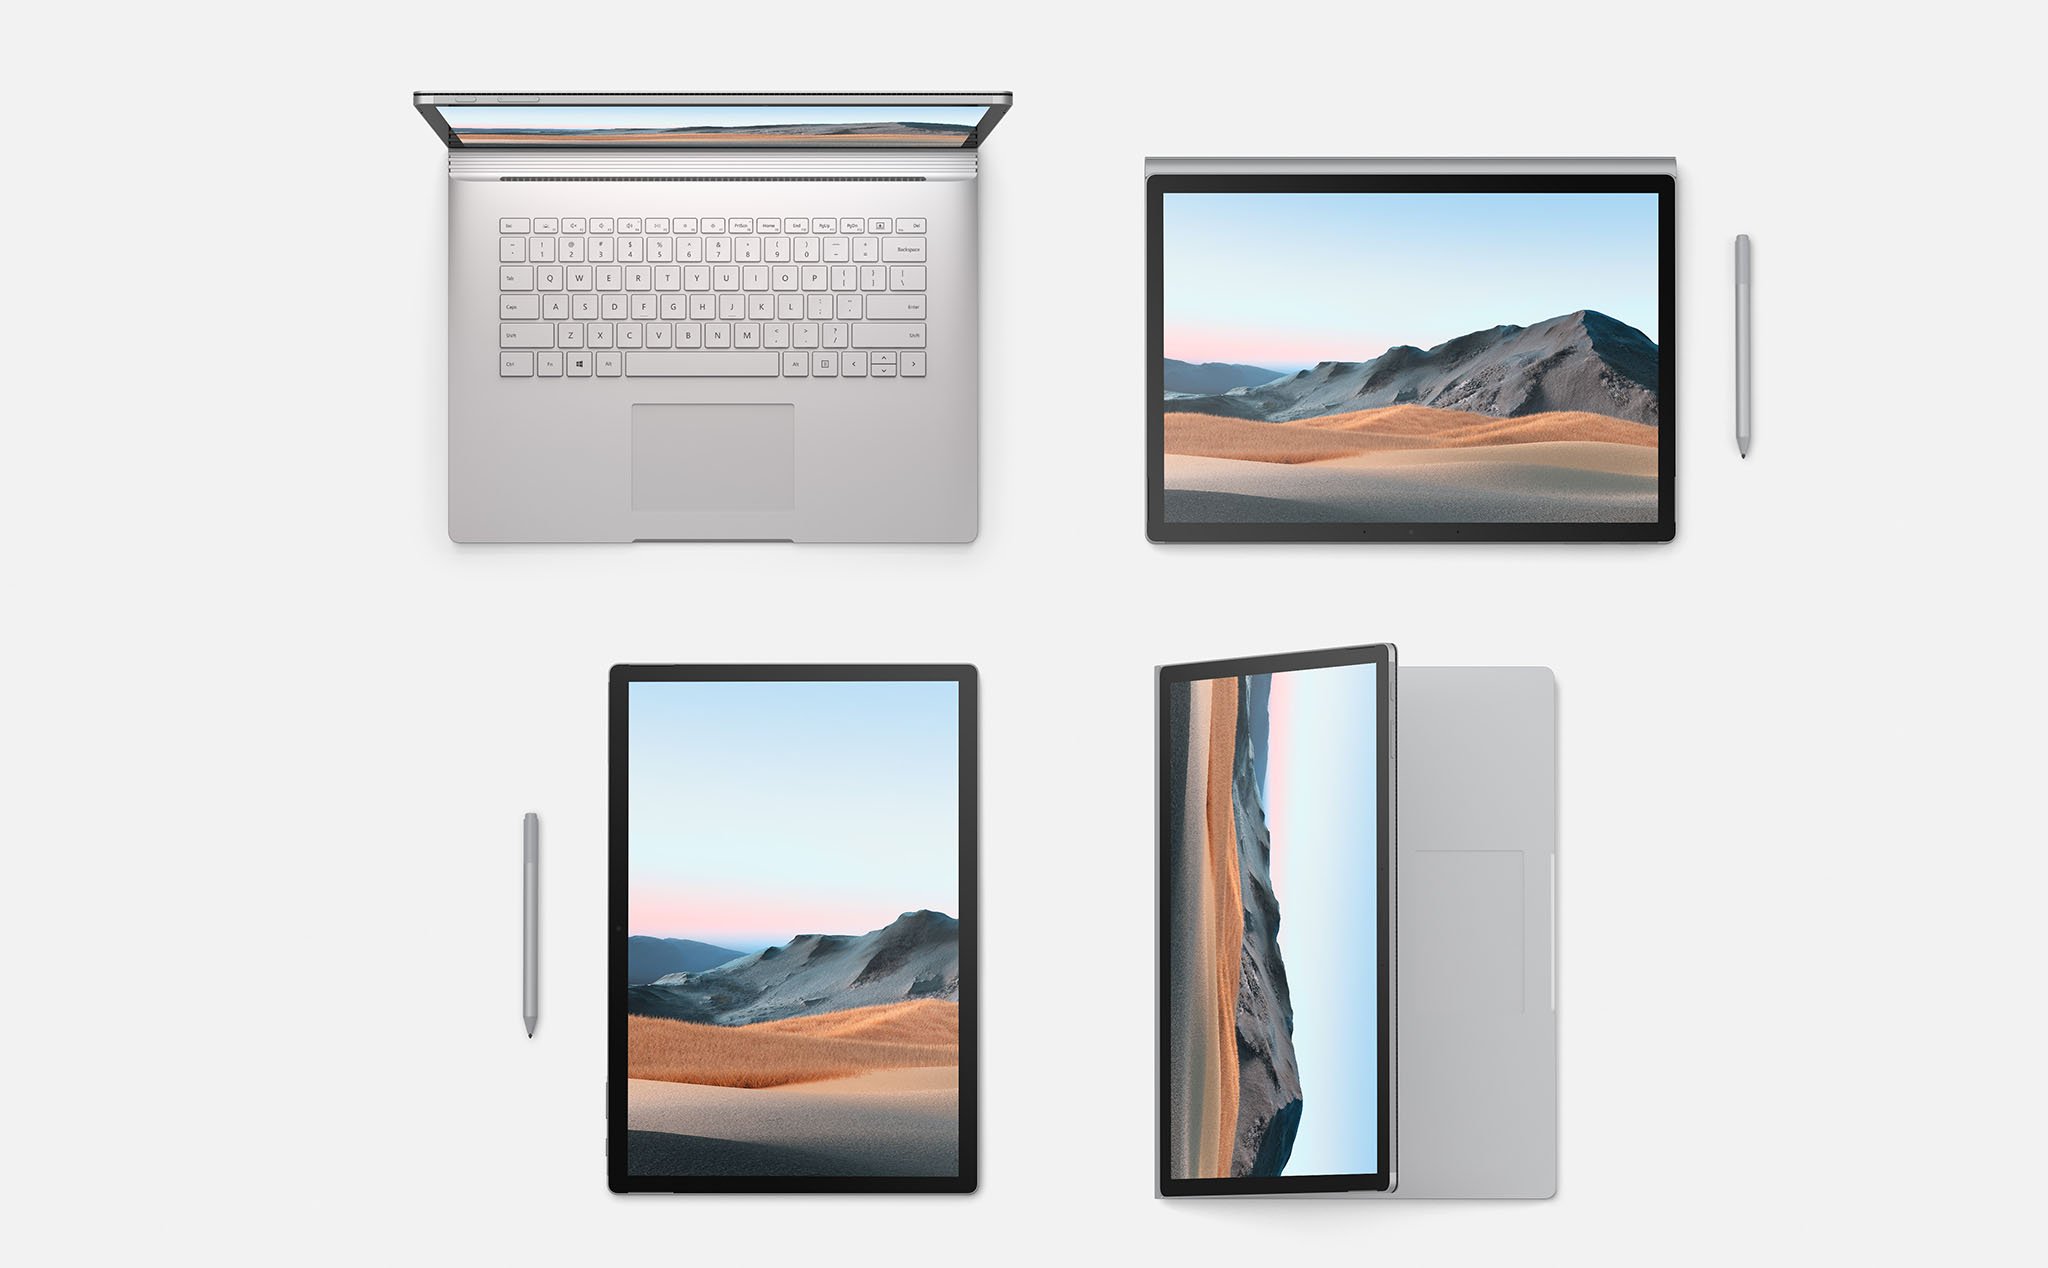 Tuần này có gì: 13-inch MacBook Pro 2020, OPPO Reno3, Bphone 86, rạp phim mở cửa,...